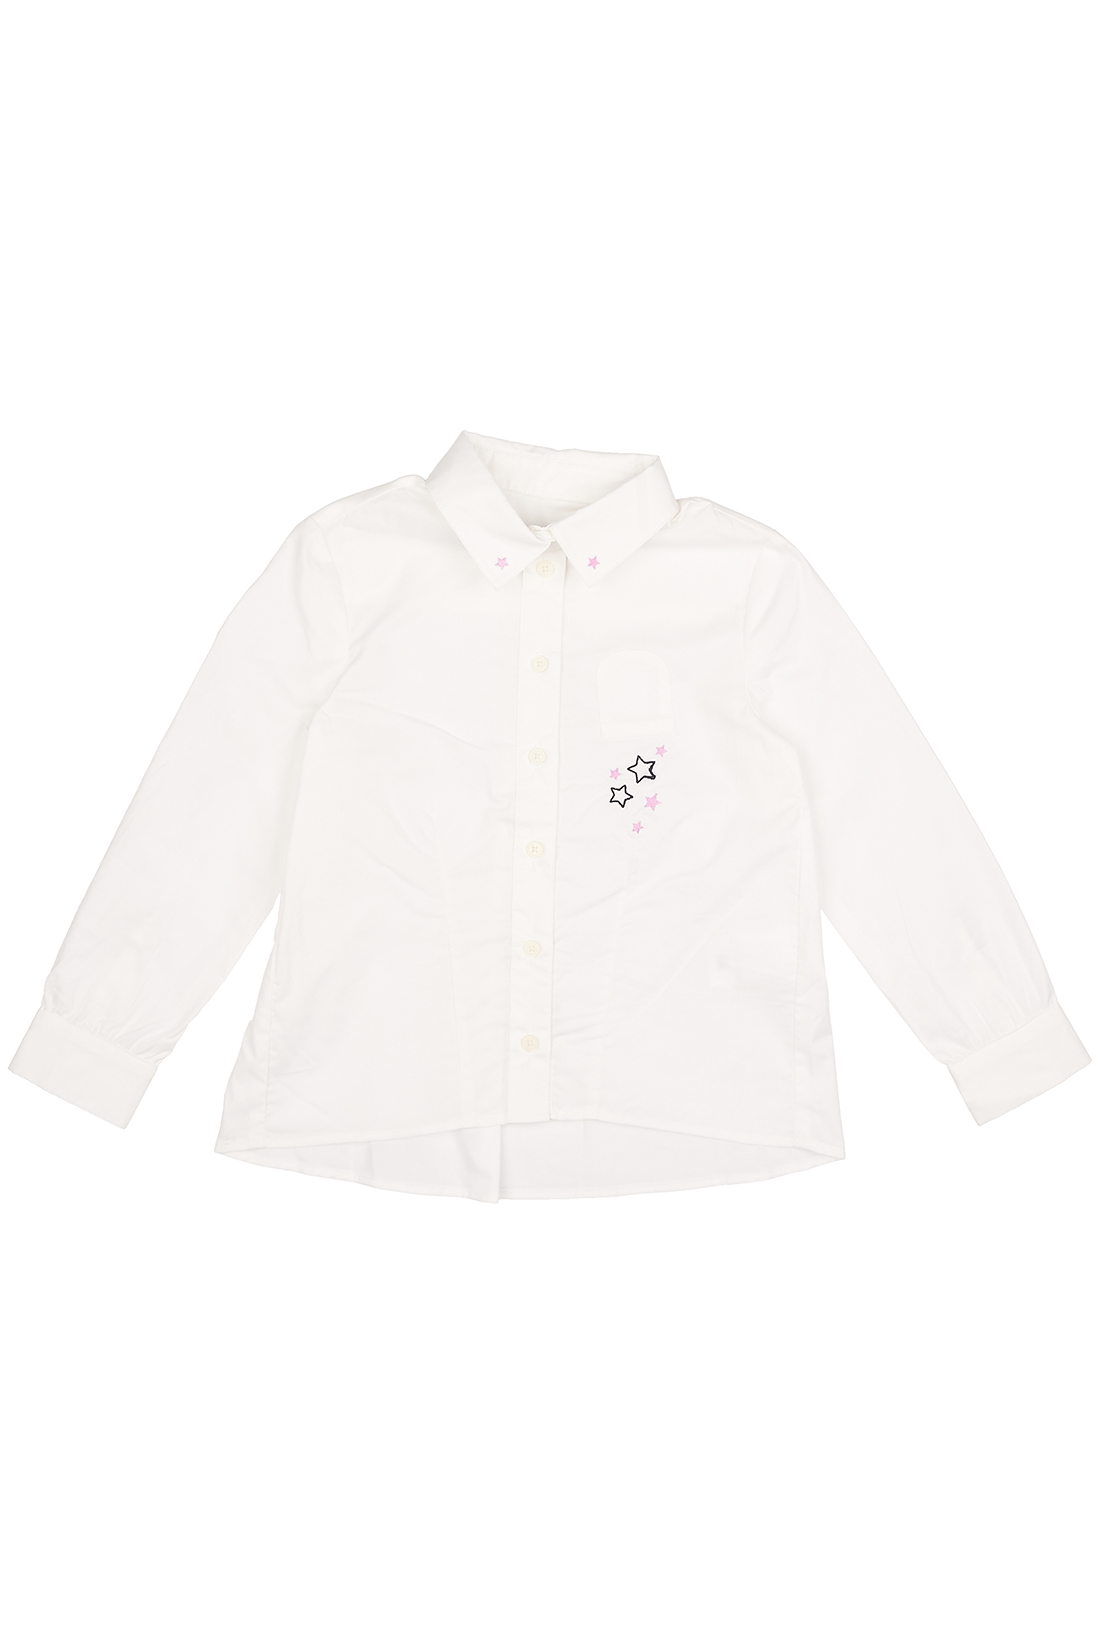 Блузка для девочки (арт. baon BK179502), размер 116, цвет белый Блузка для девочки (арт. baon BK179502) - фото 3